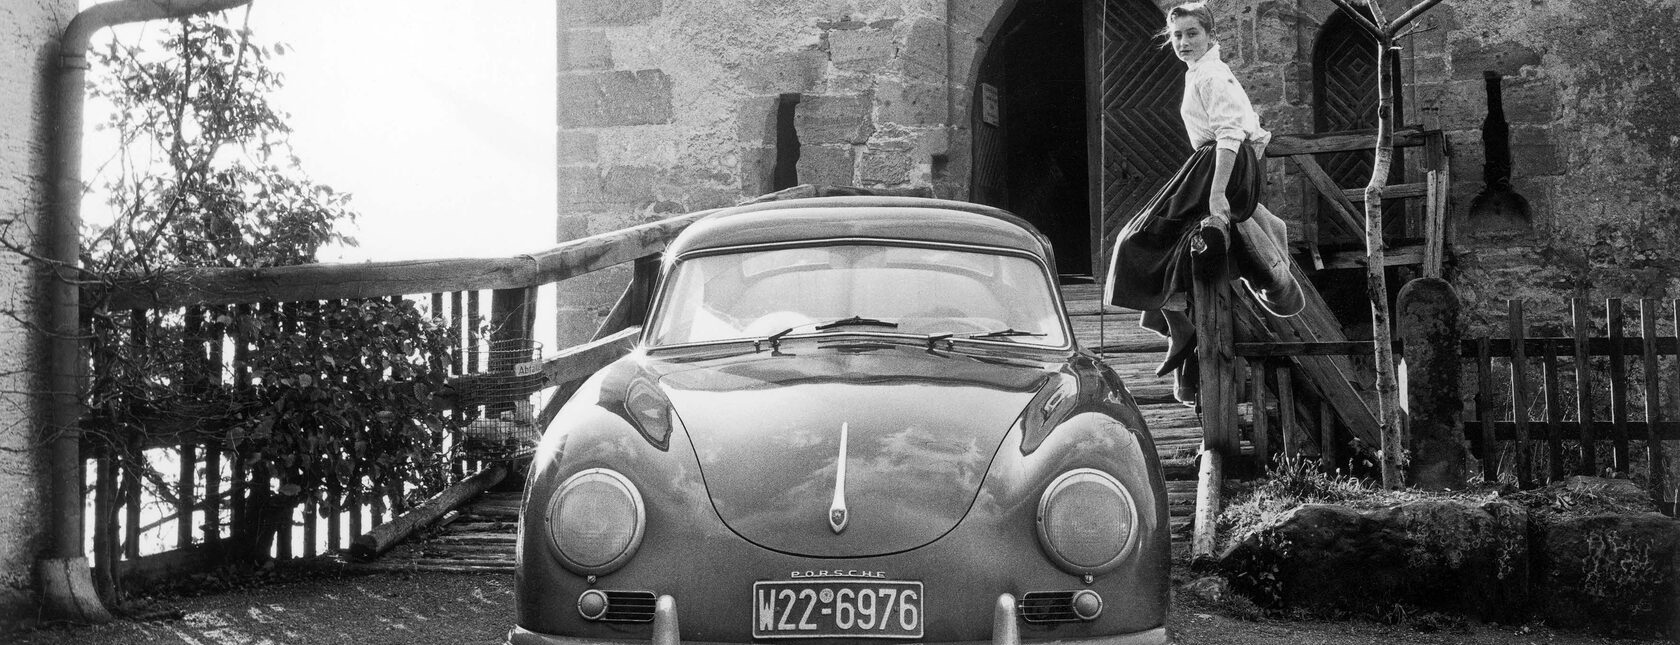 История и ценности бренда Porsche.